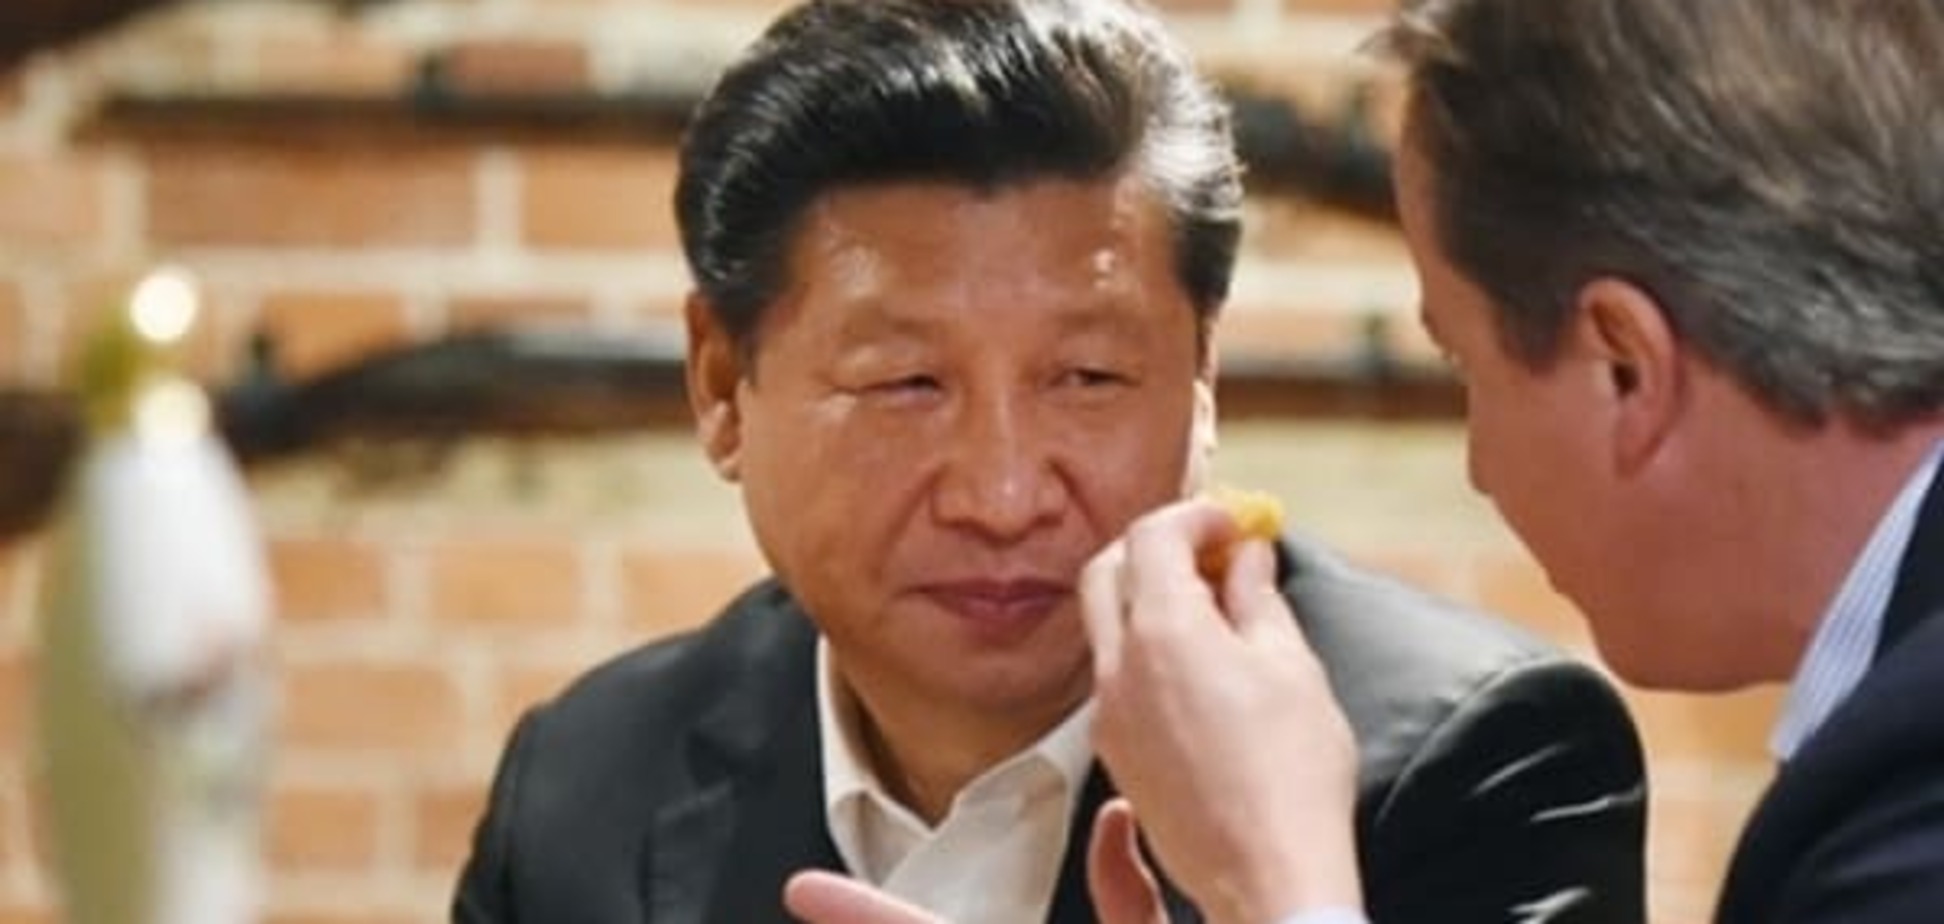 'Ты меня уважаешь?' Кэмерон напоил лидера Китая пивом в местном пабе: фоторепортаж